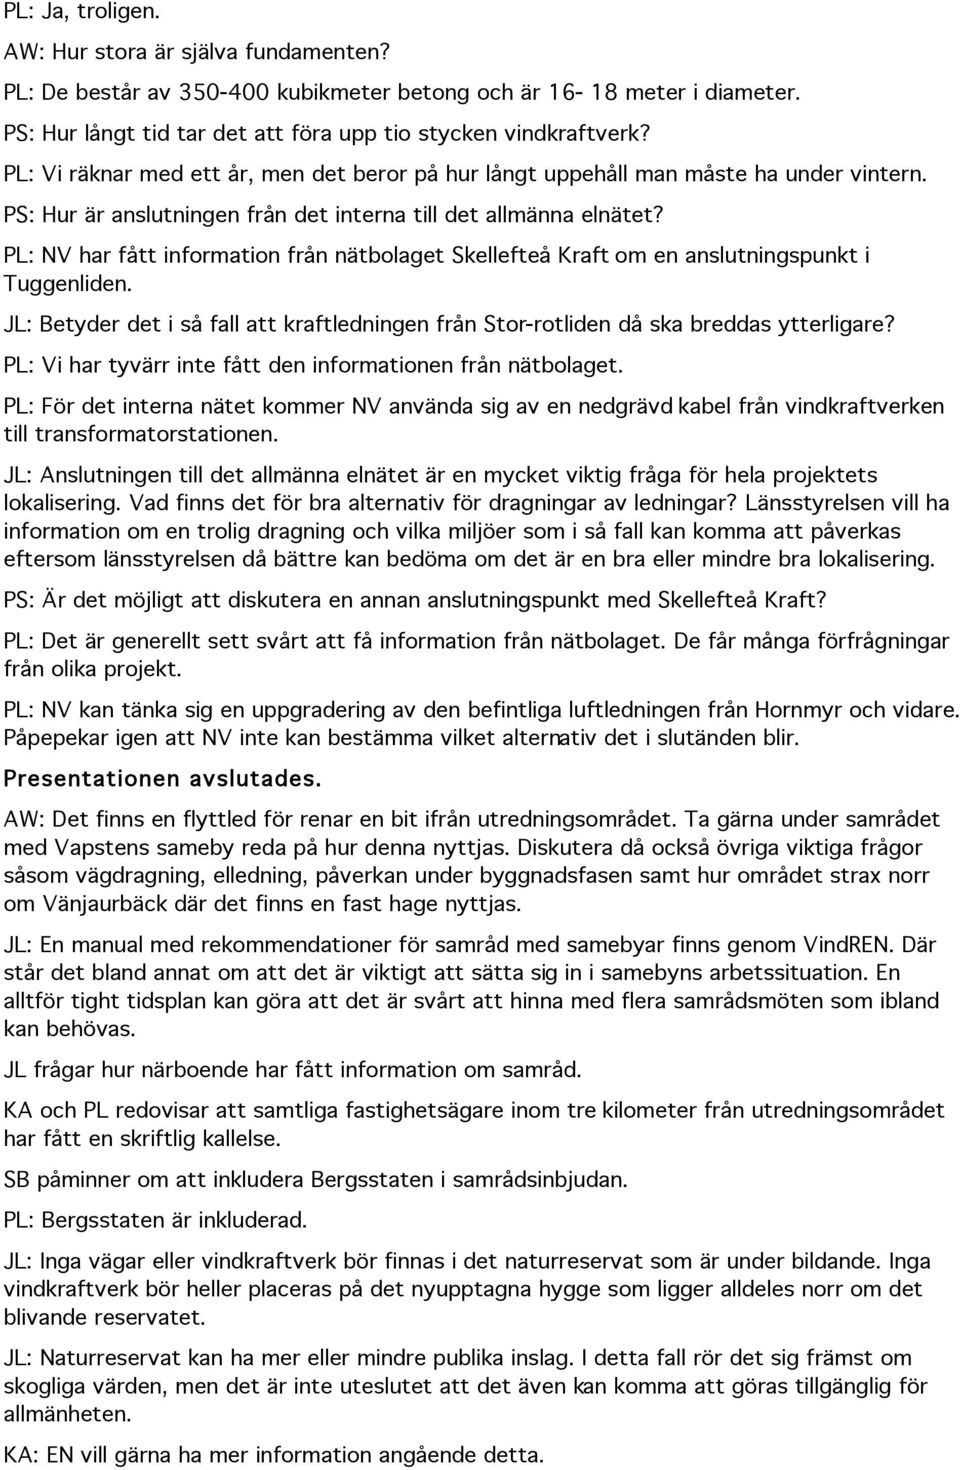 PL: NV har fått information från nätbolaget Skellefteå Kraft om en anslutningspunkt i Tuggenliden. JL: Betyder det i så fall att kraftledningen från Stor-rotliden då ska breddas ytterligare?